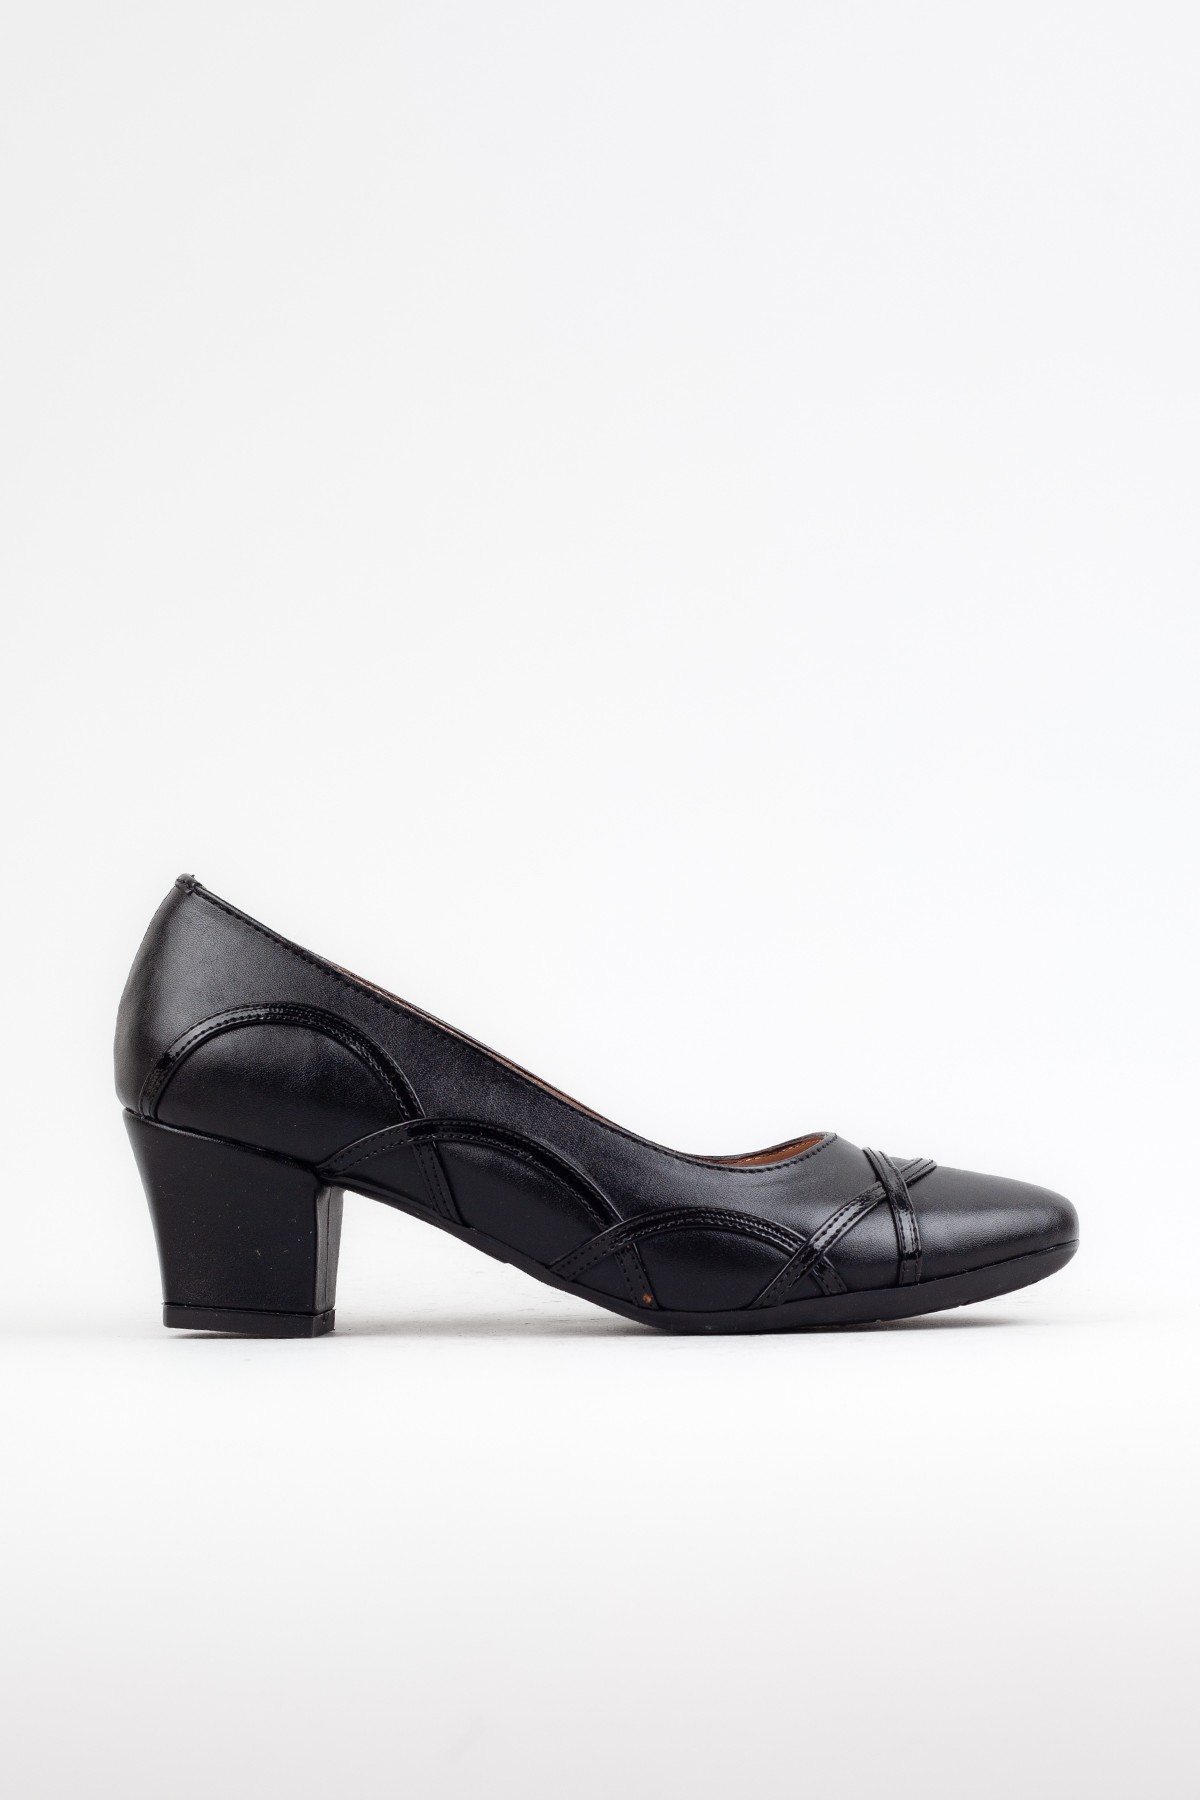 Kadın Klasik Topuklu Ayakkabı, Kalın Topuklu Ayakkabı